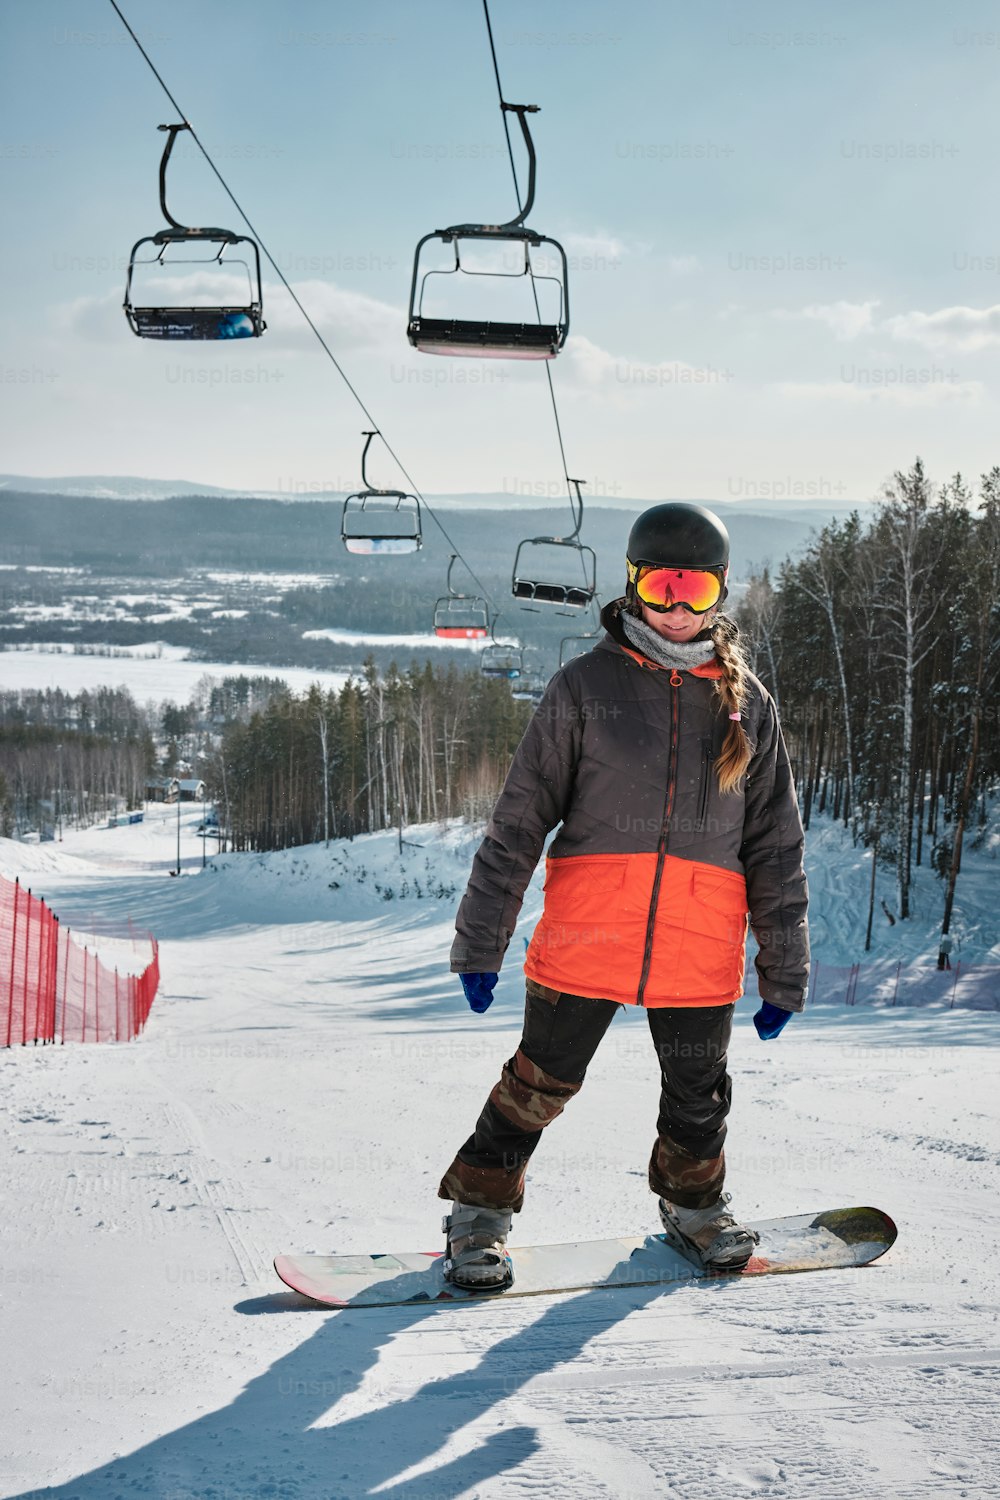 eine Person, die mit einem Snowboard auf einer verschneiten Oberfläche fährt